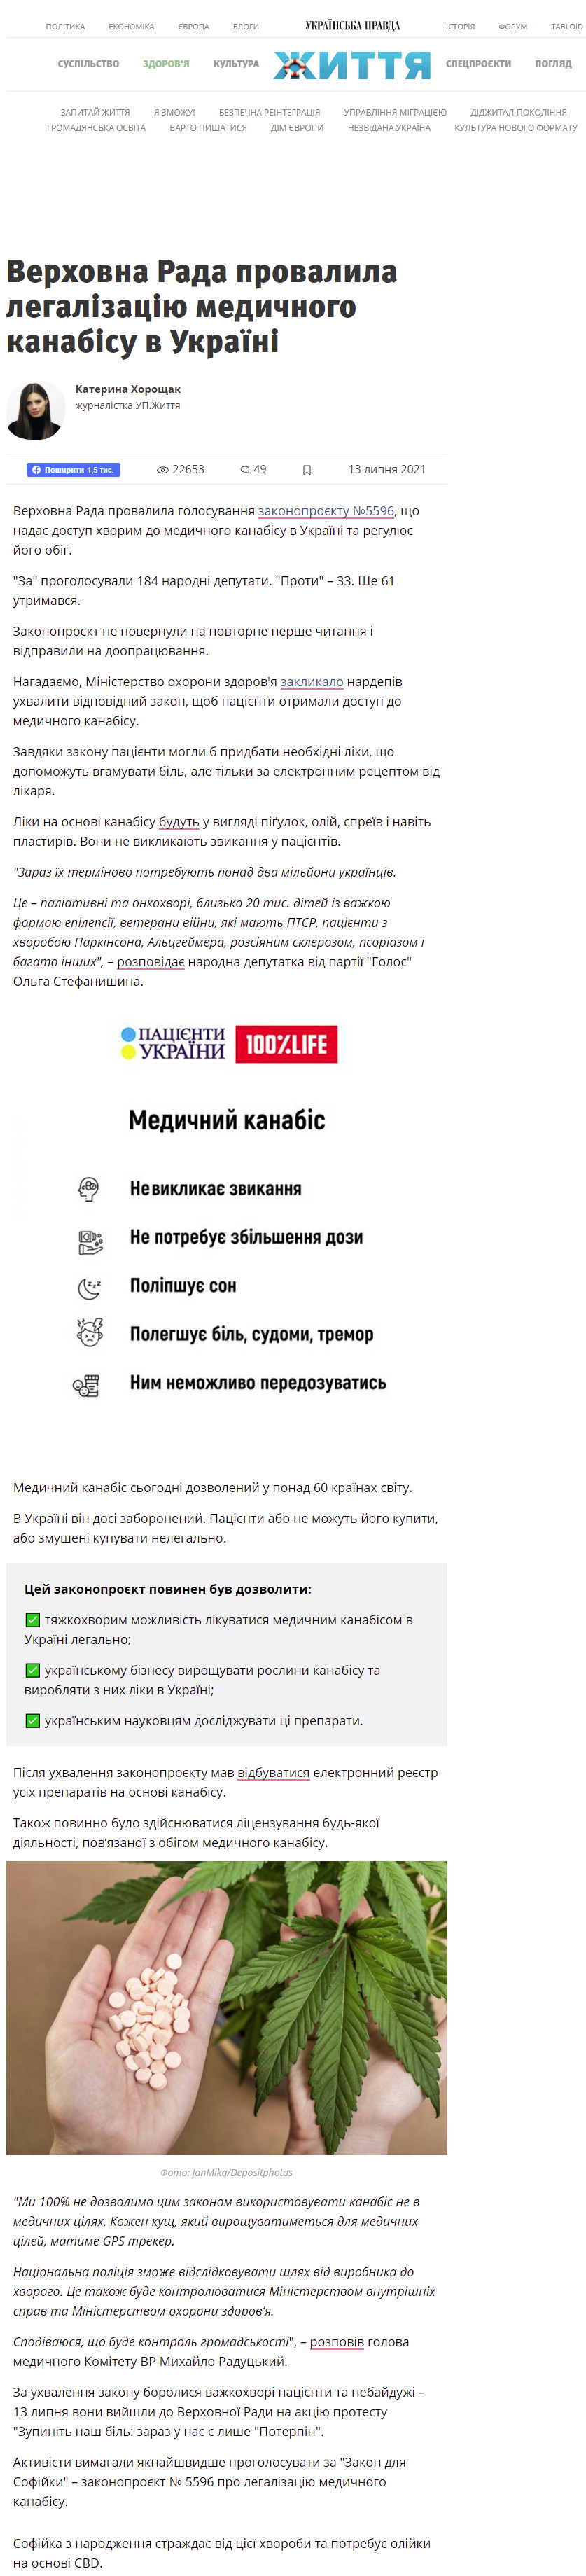 https://life.pravda.com.ua/health/2021/07/13/245396/